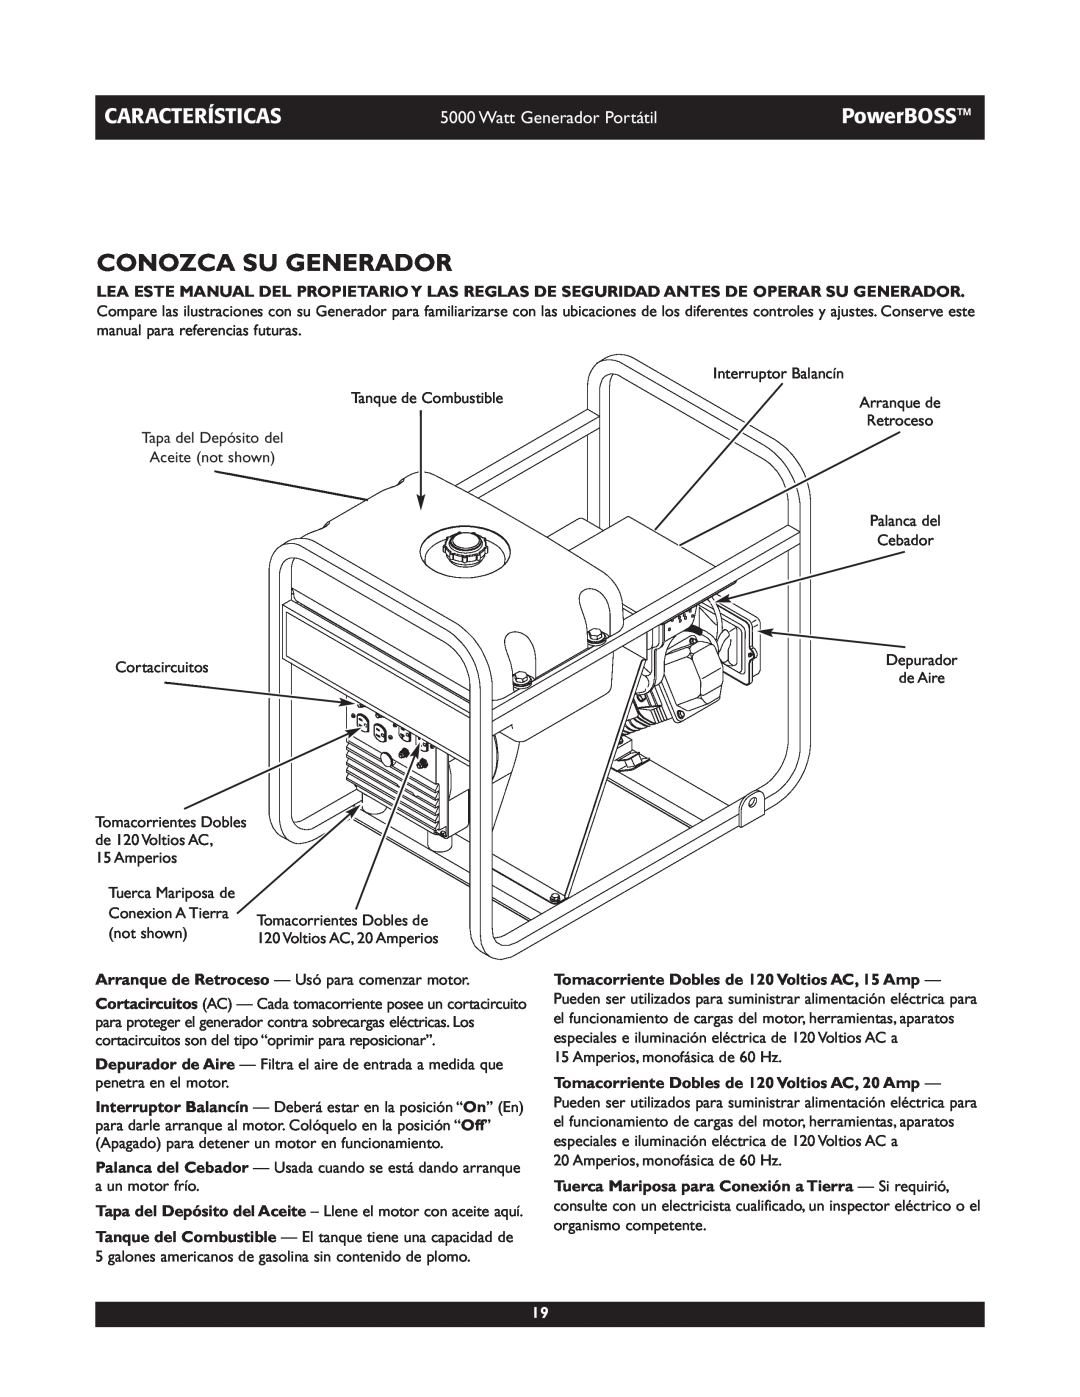 Briggs & Stratton 030222 owner manual Conozca Su Generador, Características, PowerBOSS, Watt Generador Portátil 